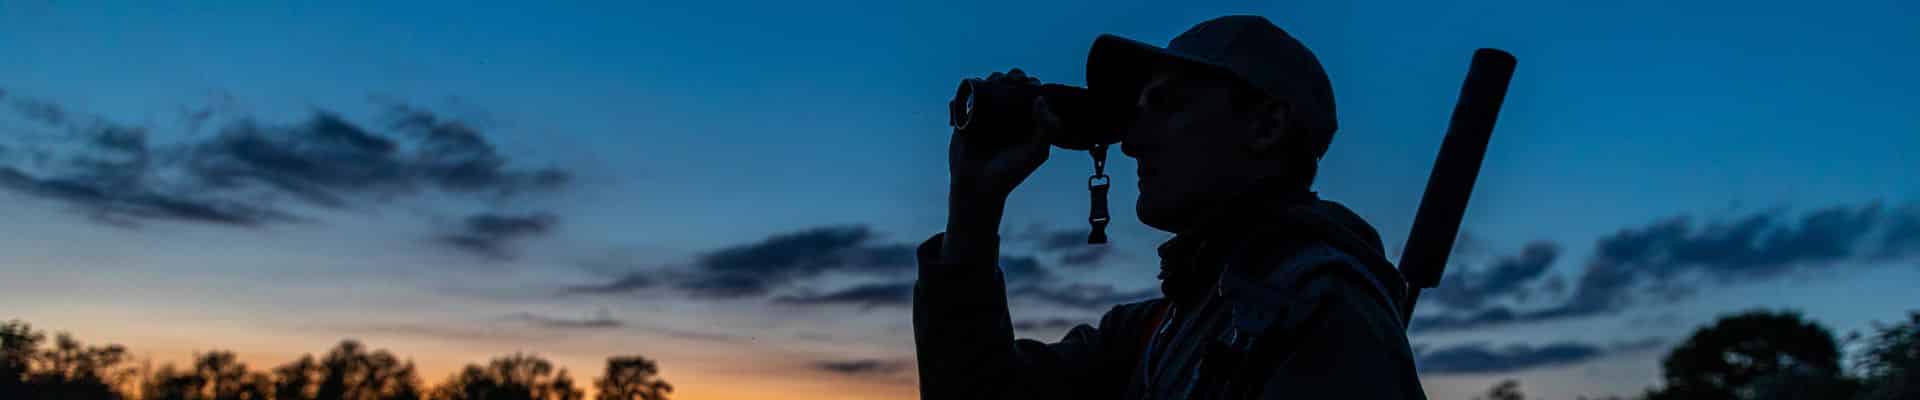 Night deer stalker looking through binoculars